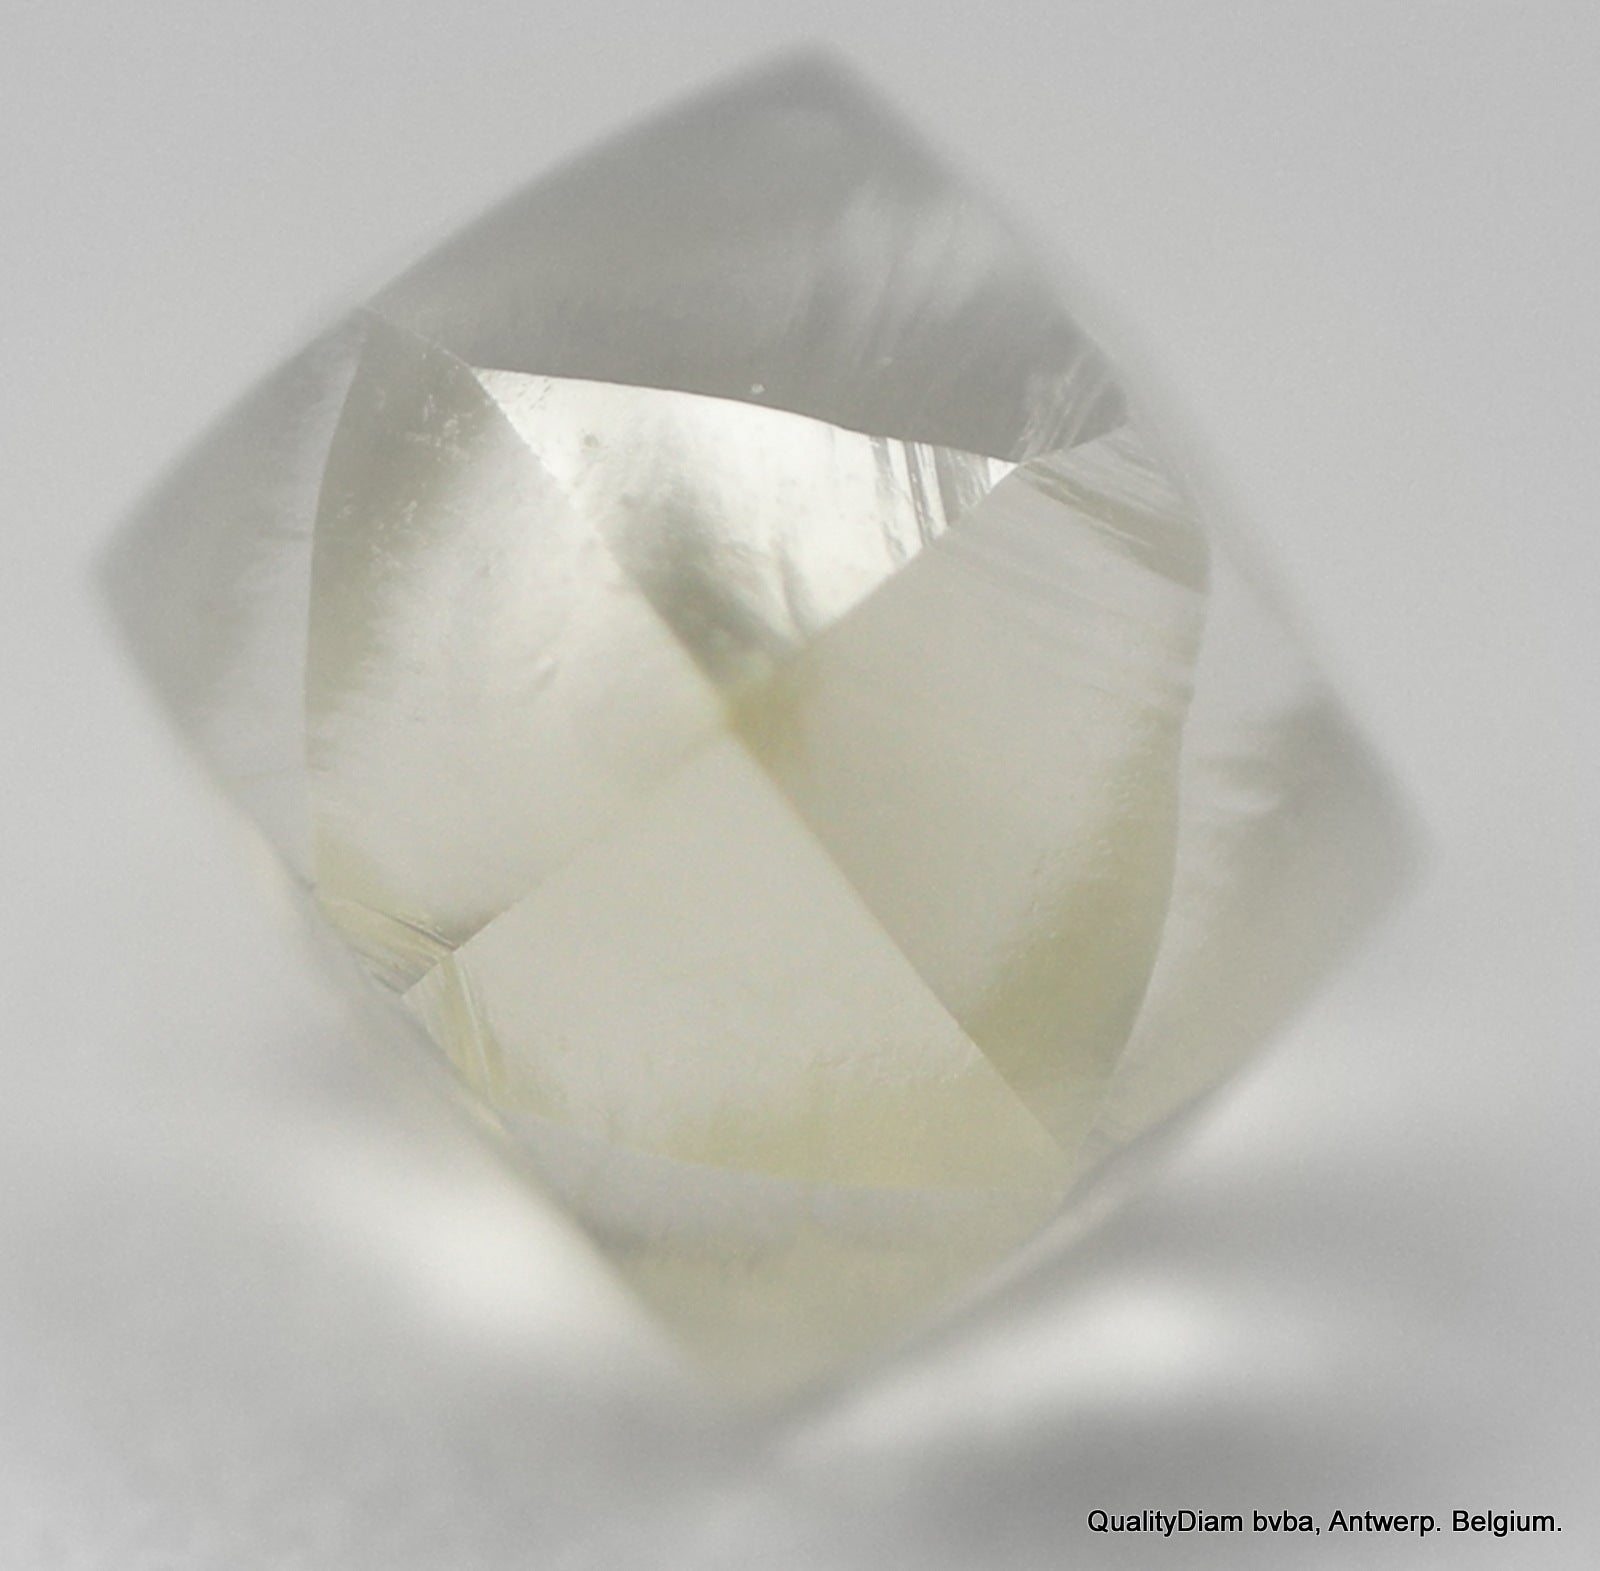 I Flawless Genuine Rough Diamond 0.15 Carat 100% natural diamond